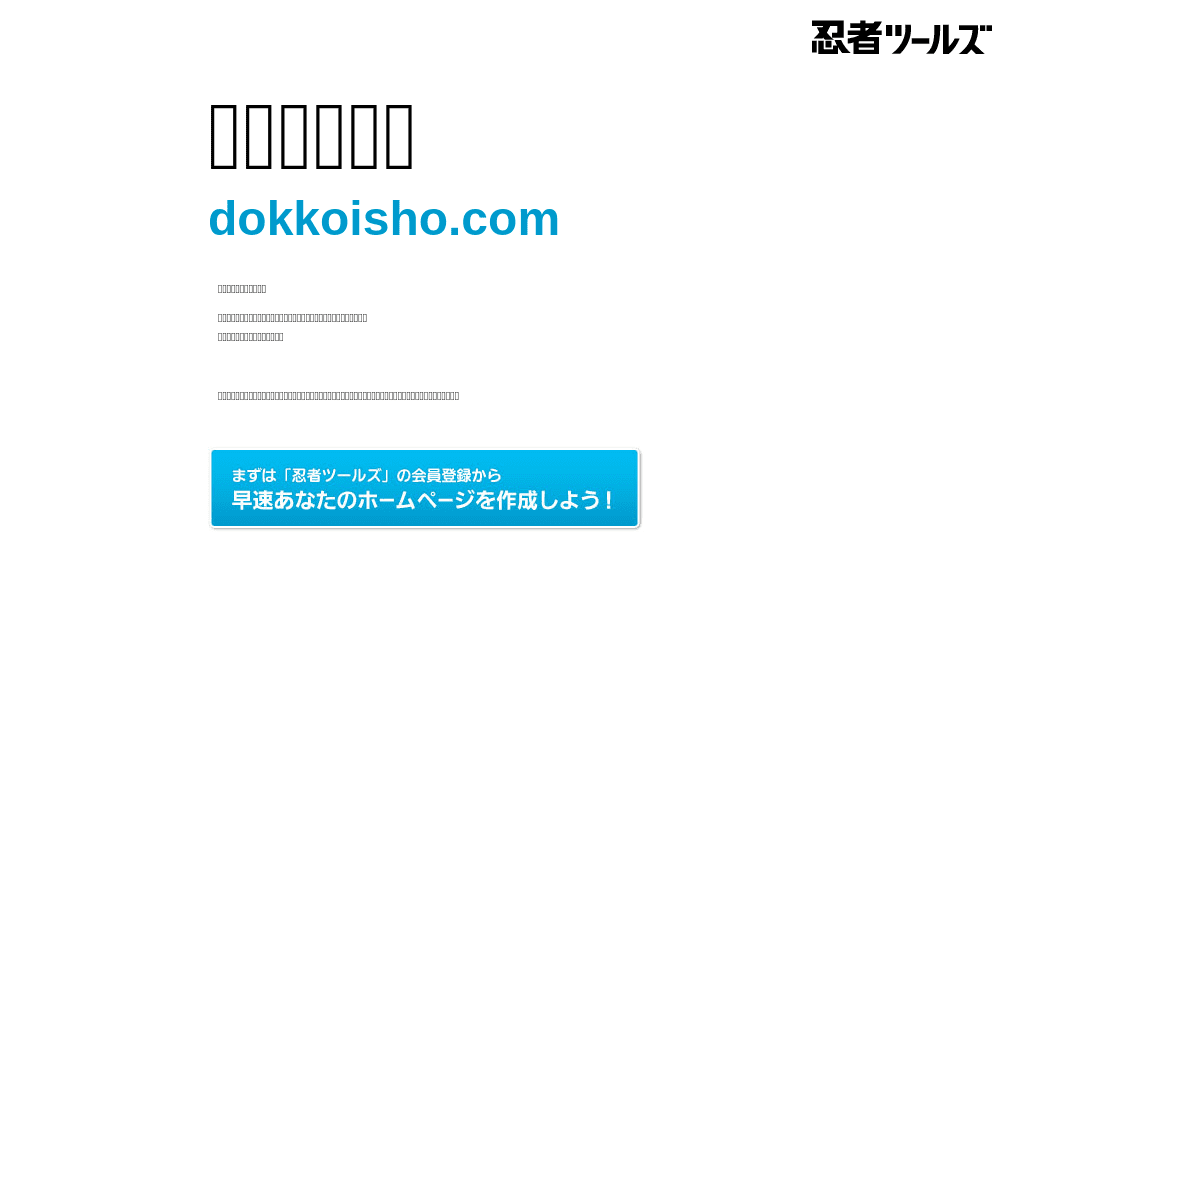 A complete backup of https://dokkoisho.com